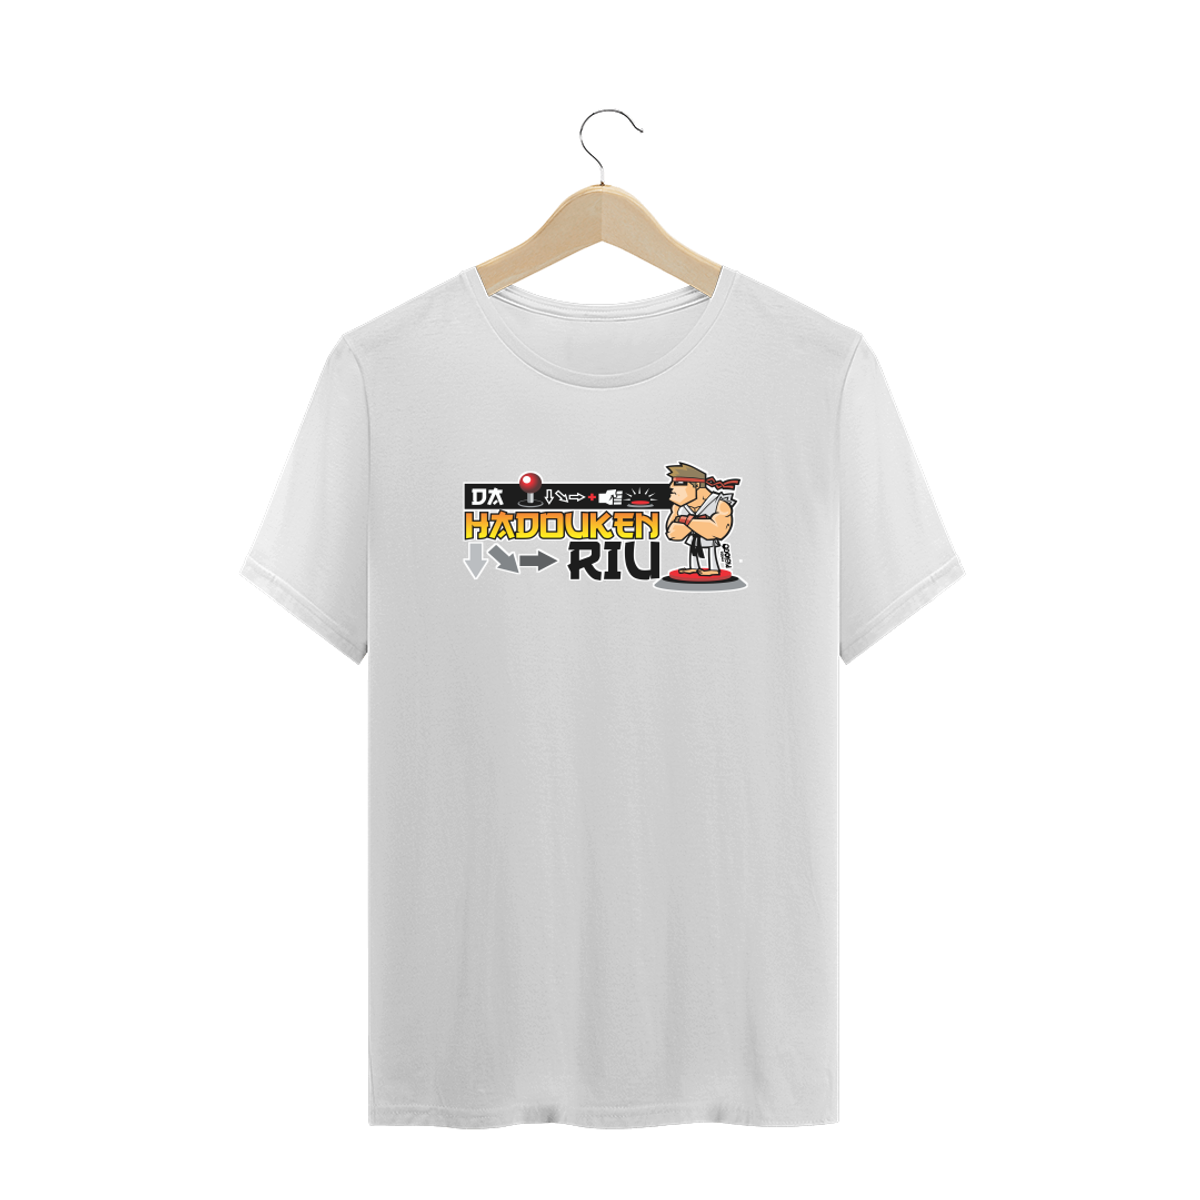 Nome do produto: Camiseta Da Hadouken Riu